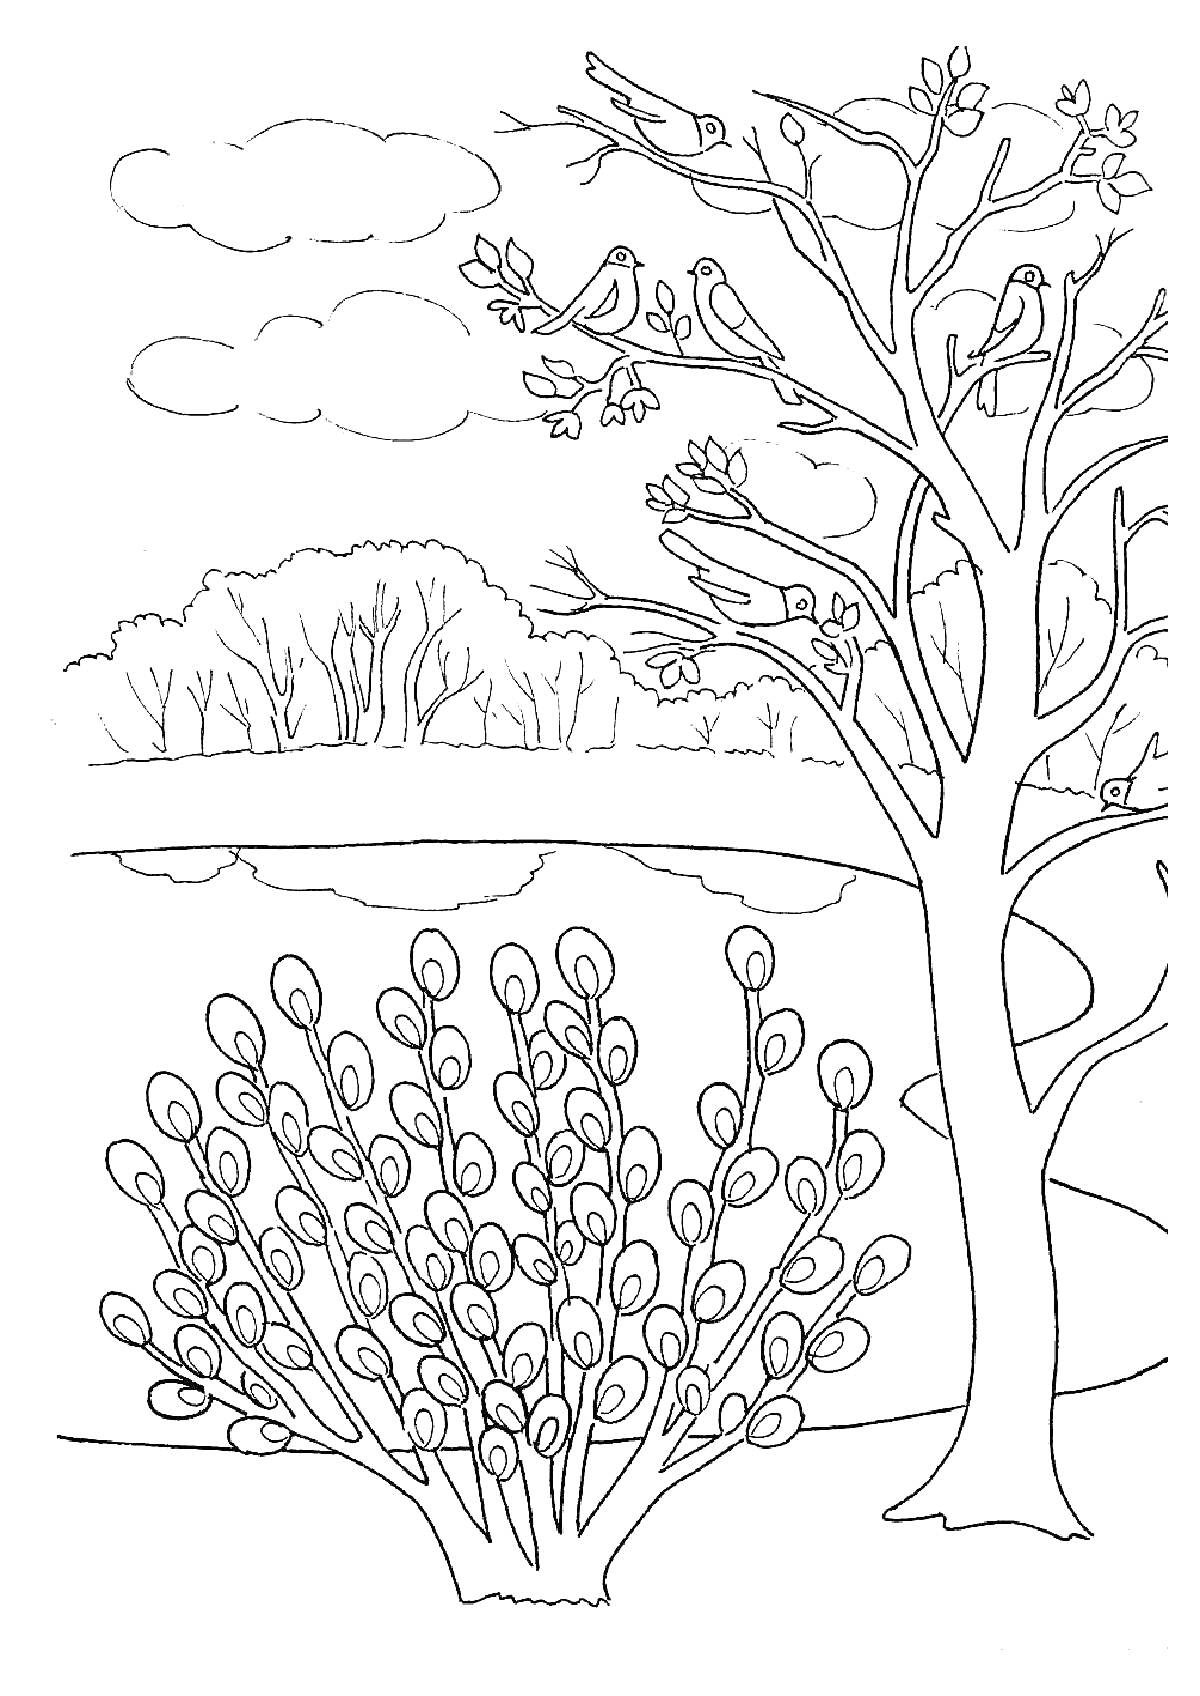 Раскраска Весенний пейзаж с деревом, кустом вербы, птицами и облачным небом над рекой